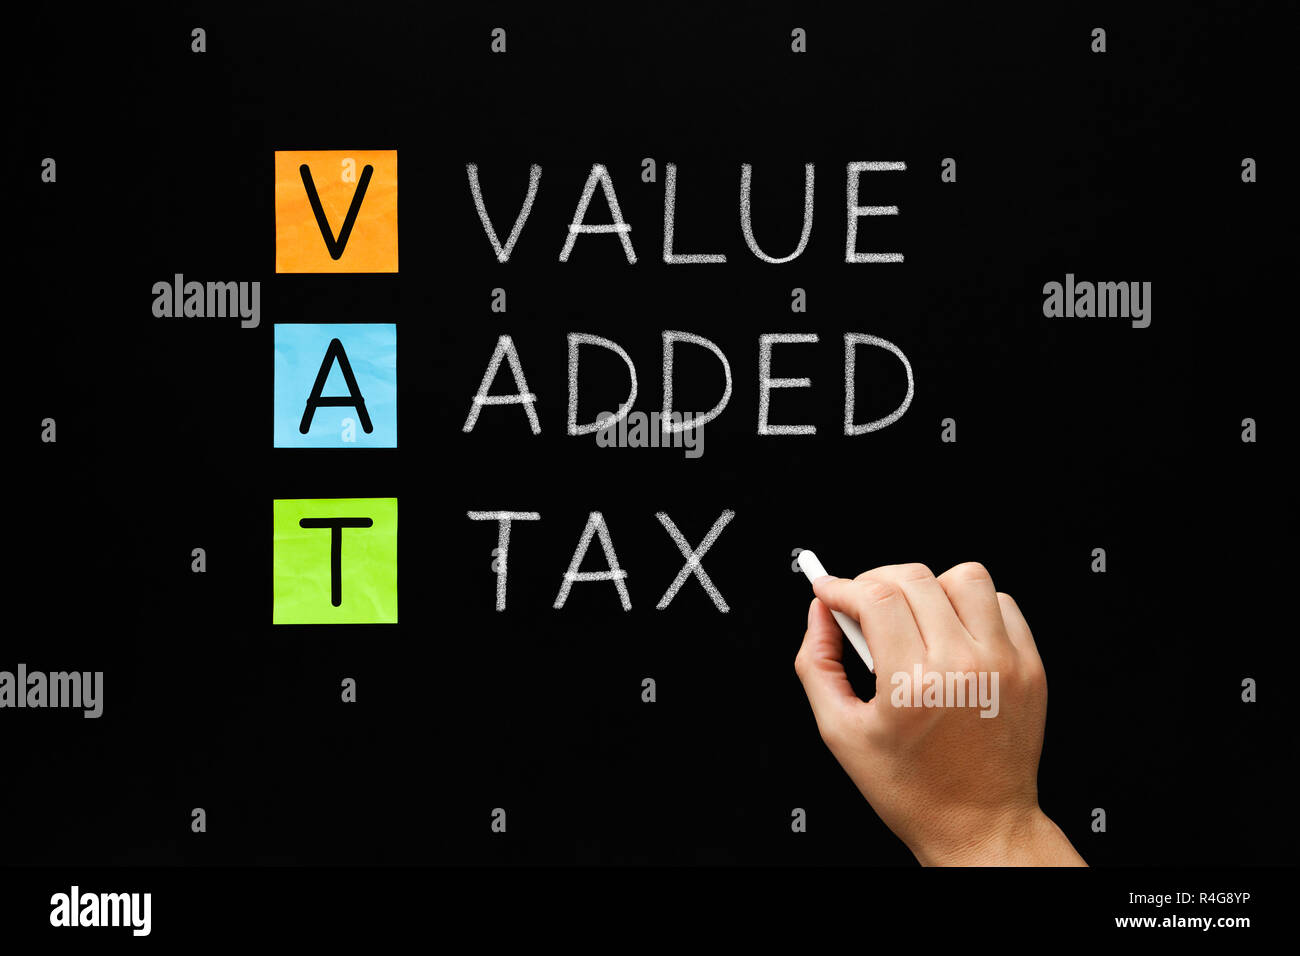 VAT - Value Added Tax On Blackboard Stock Photo